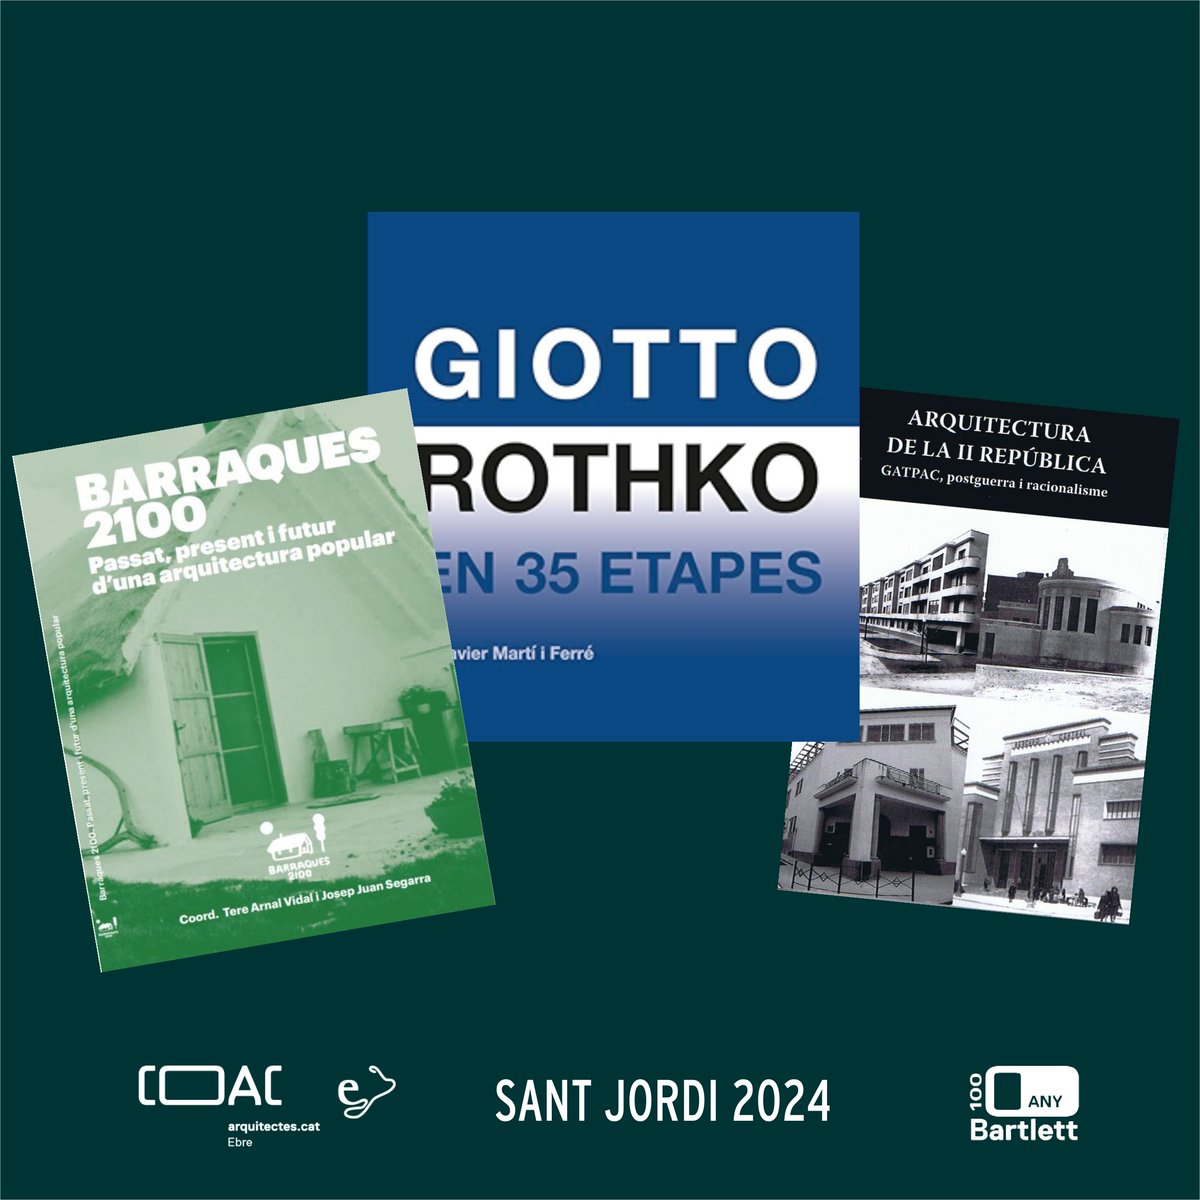 Aquestes són les recomanacions per #SantJordi2024 que he fet a @radiotortosa ✅ Arquitectura de andar por casa ✅ Barraques 2100 ✅ Giotto Rothko en 35 etapes ✅ Arquitectura de la II República, GATCPAC, postguerra i racionalisme Escolteu-ho a👇 radiotortosa.cat/podcast/progra…